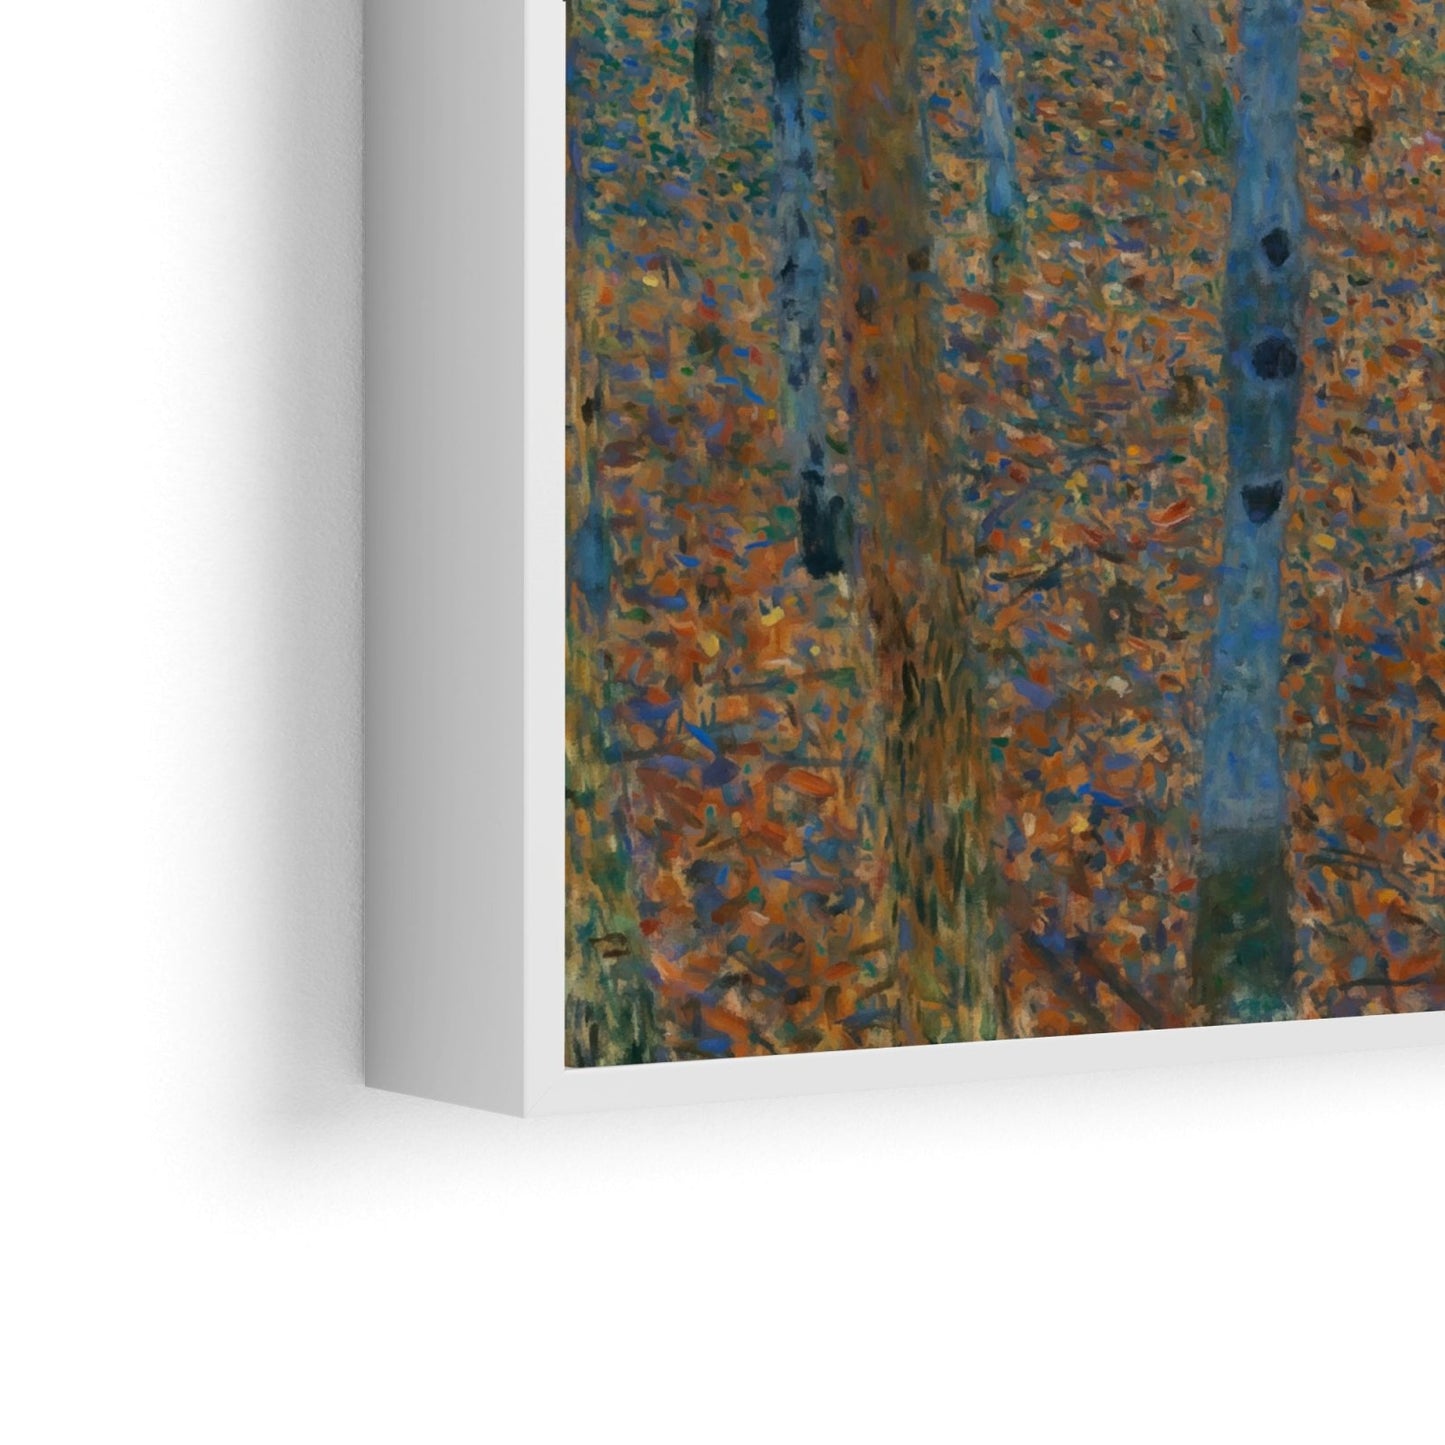 Forêt de bouleaux - Gustav Klimt